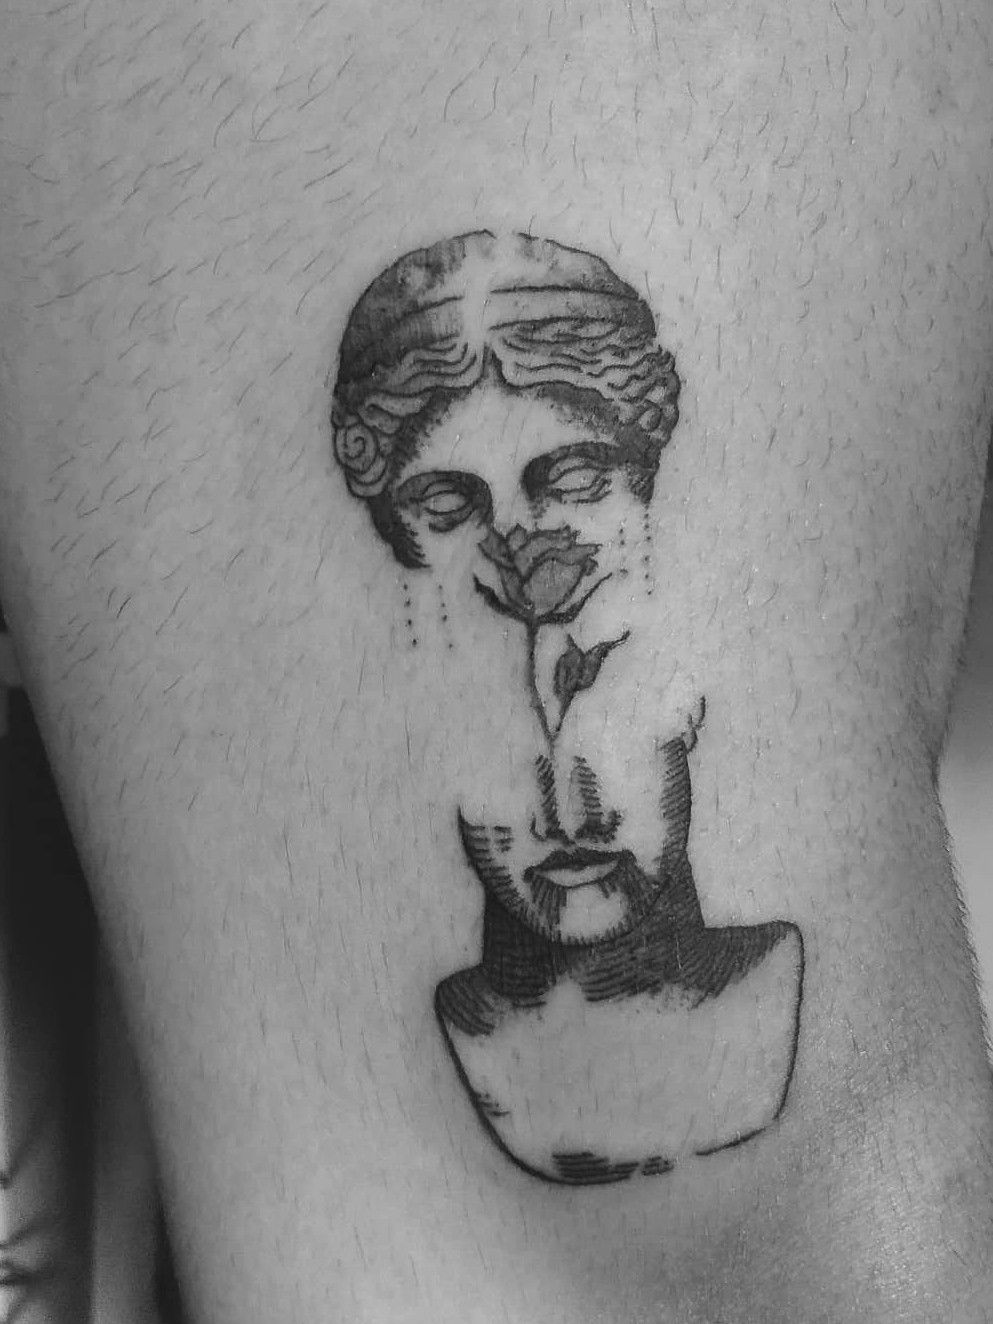 Tattoo Artist  Miranda Rose on Instagram Minimal portrait of the  painting The Birth of Venus  linework minimalisttattoo finelinetattoo   Tatuajes